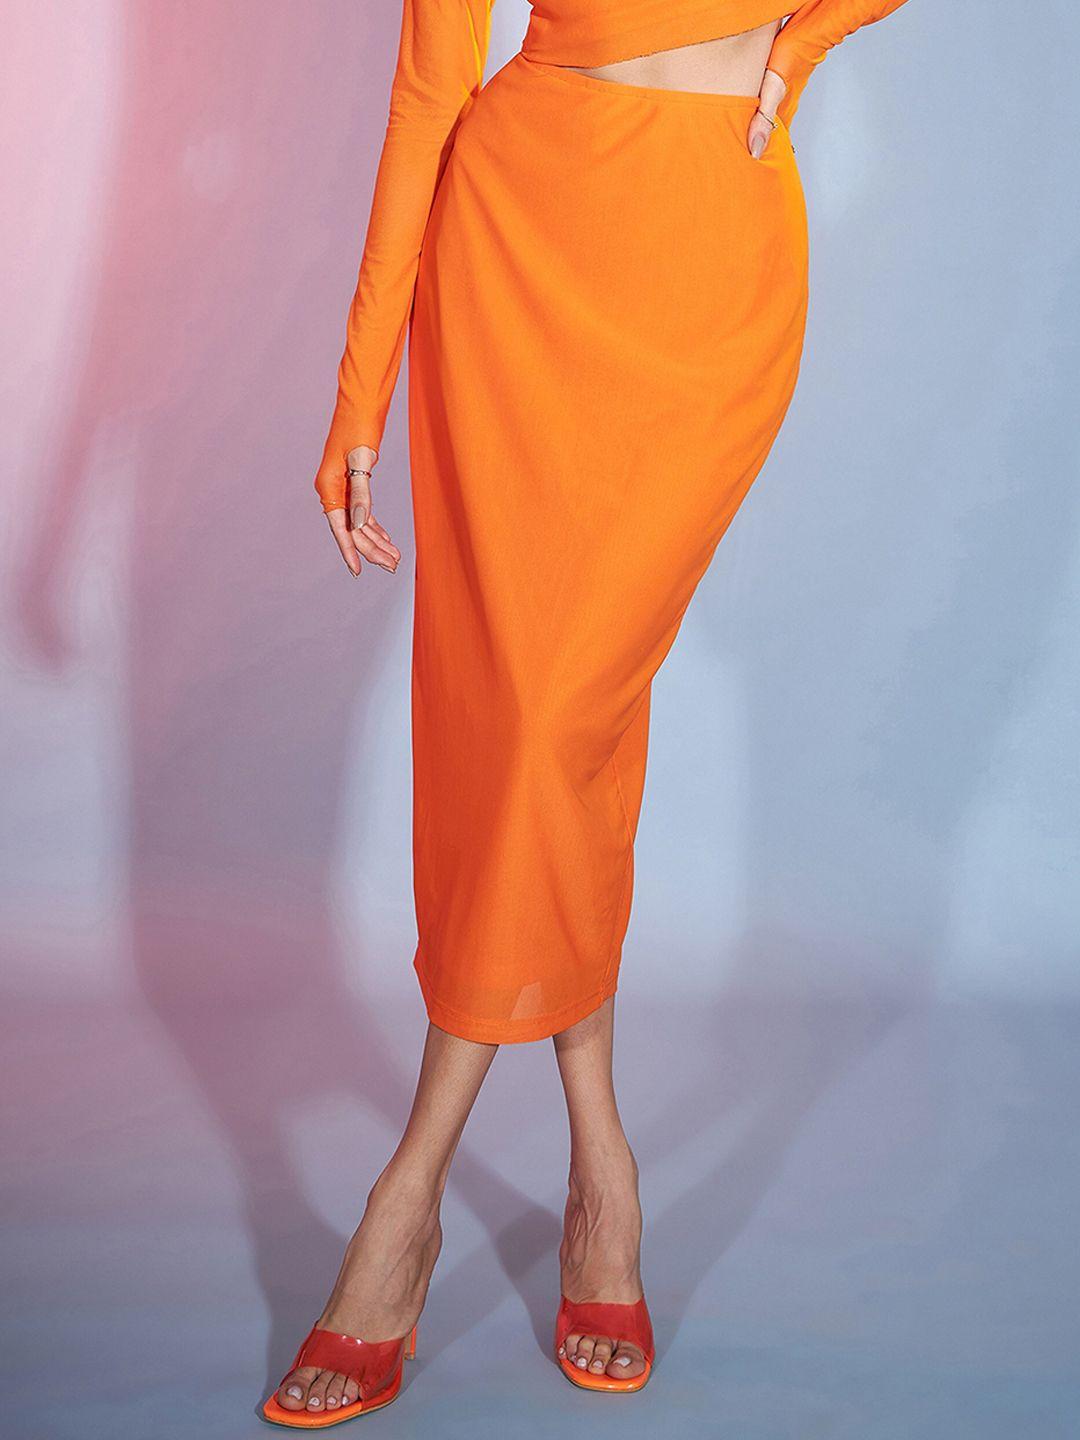 sassafras-orange-pencil-maxi-bodycon-skirts